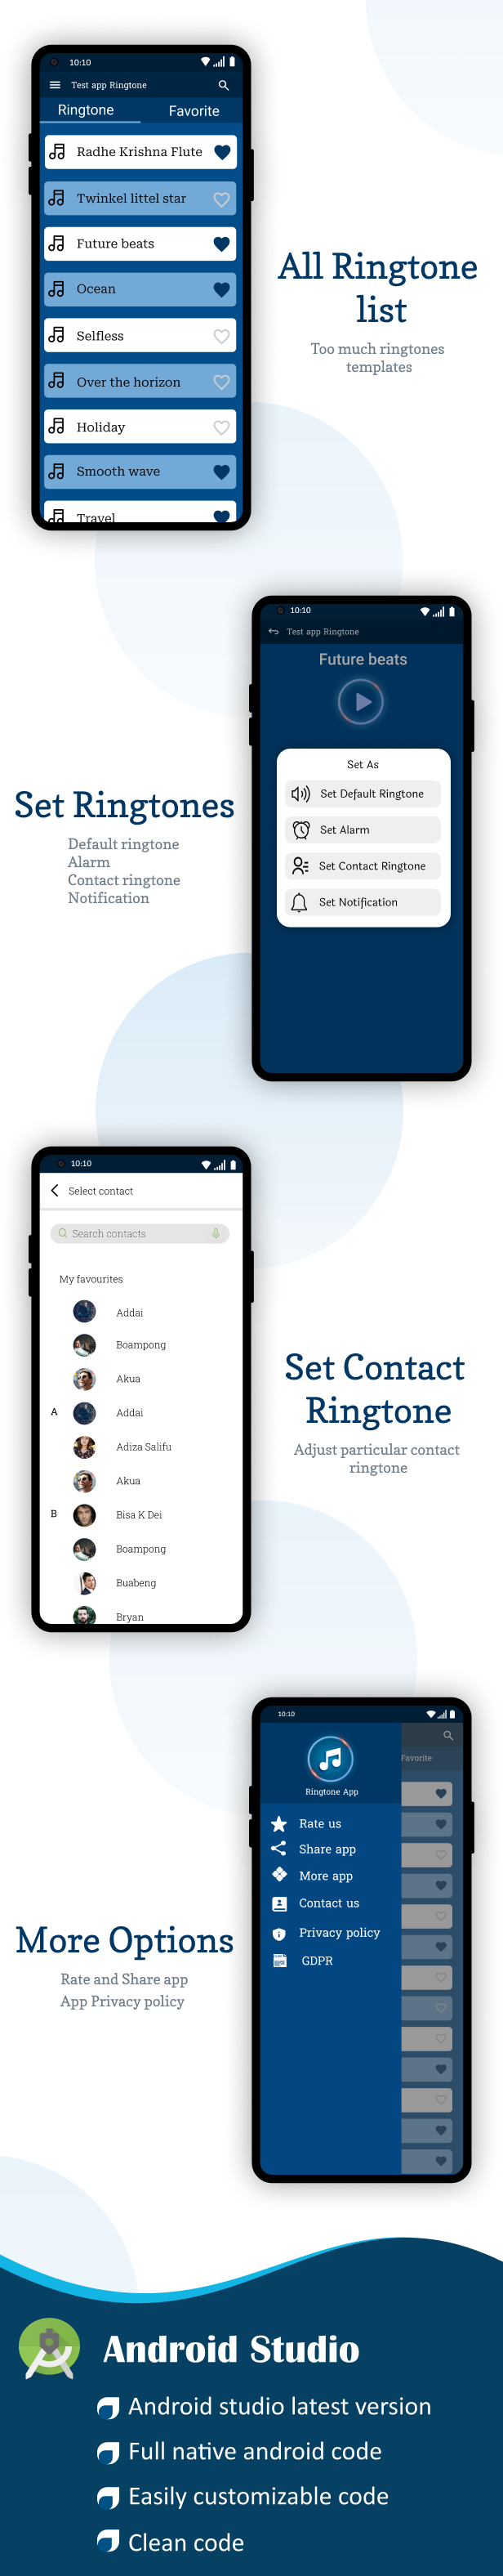 Android Offline Ringtones App | Template for Ringtone App | Ringtone App 2023 | Admob Ads - 2